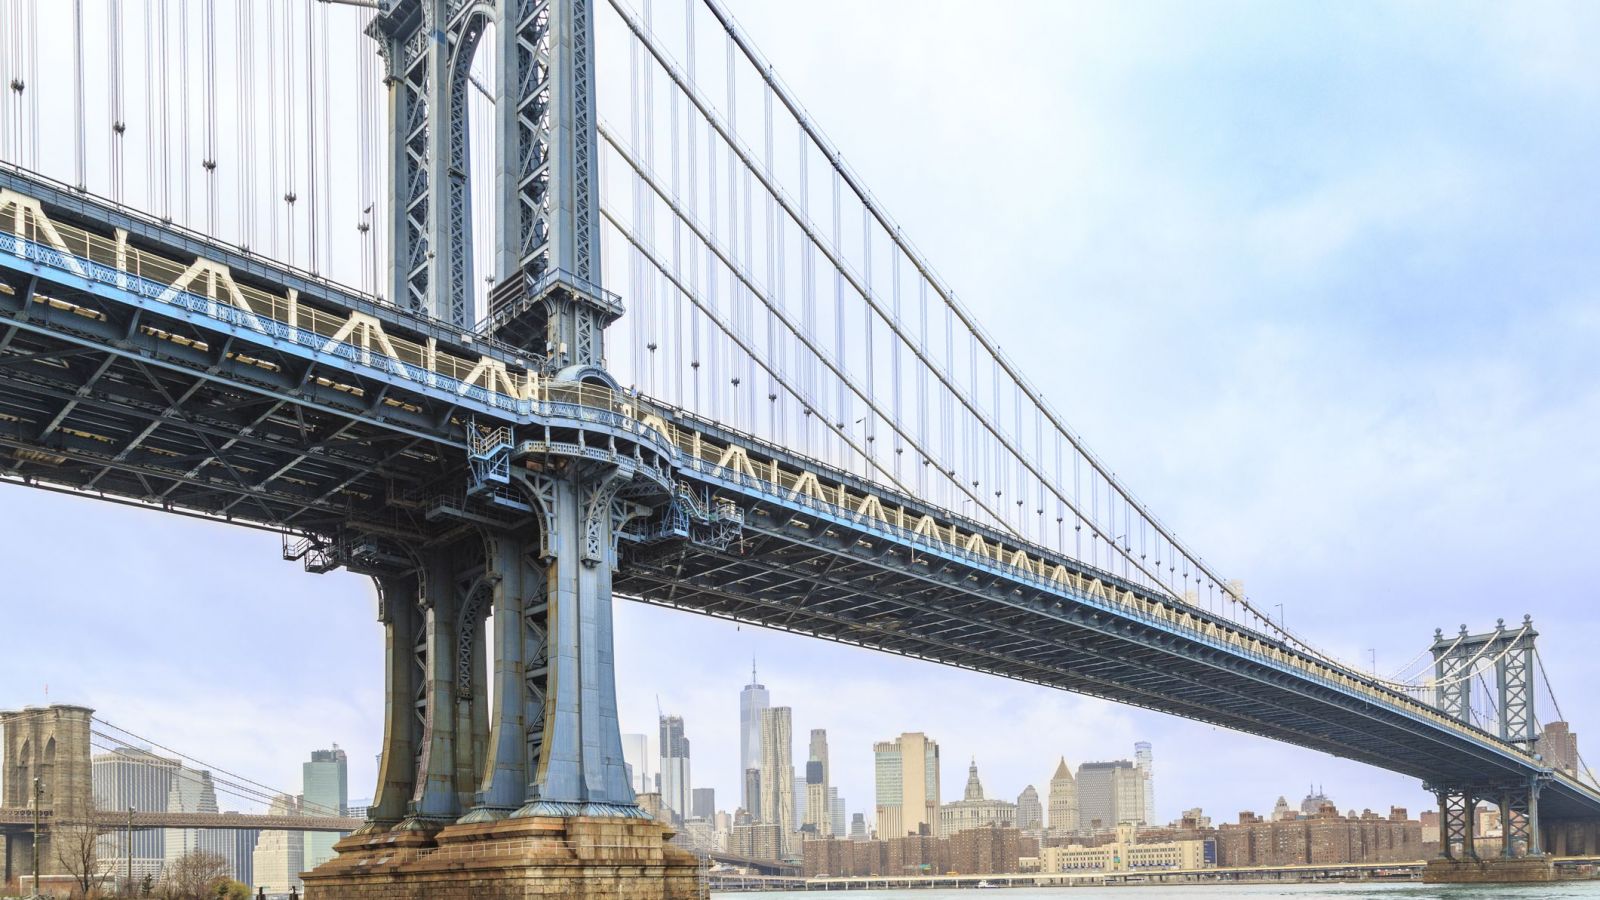 Cầu New York được xây dựng với kiến trúc hấp dẫn và độc đáo, là biểu tượng của thành phố New York. Hình ảnh về cầu New York sẽ mang đến cho bạn cảm giác như đang đứng trên cầu này, thưởng ngoạn các toà nhà cao tầng và chiêm ngưỡng cảnh đẹp của thành phố. Hãy xem ngay hình ảnh liên quan đến từ khoá này để khám phá thêm những điều thú vị về New York.